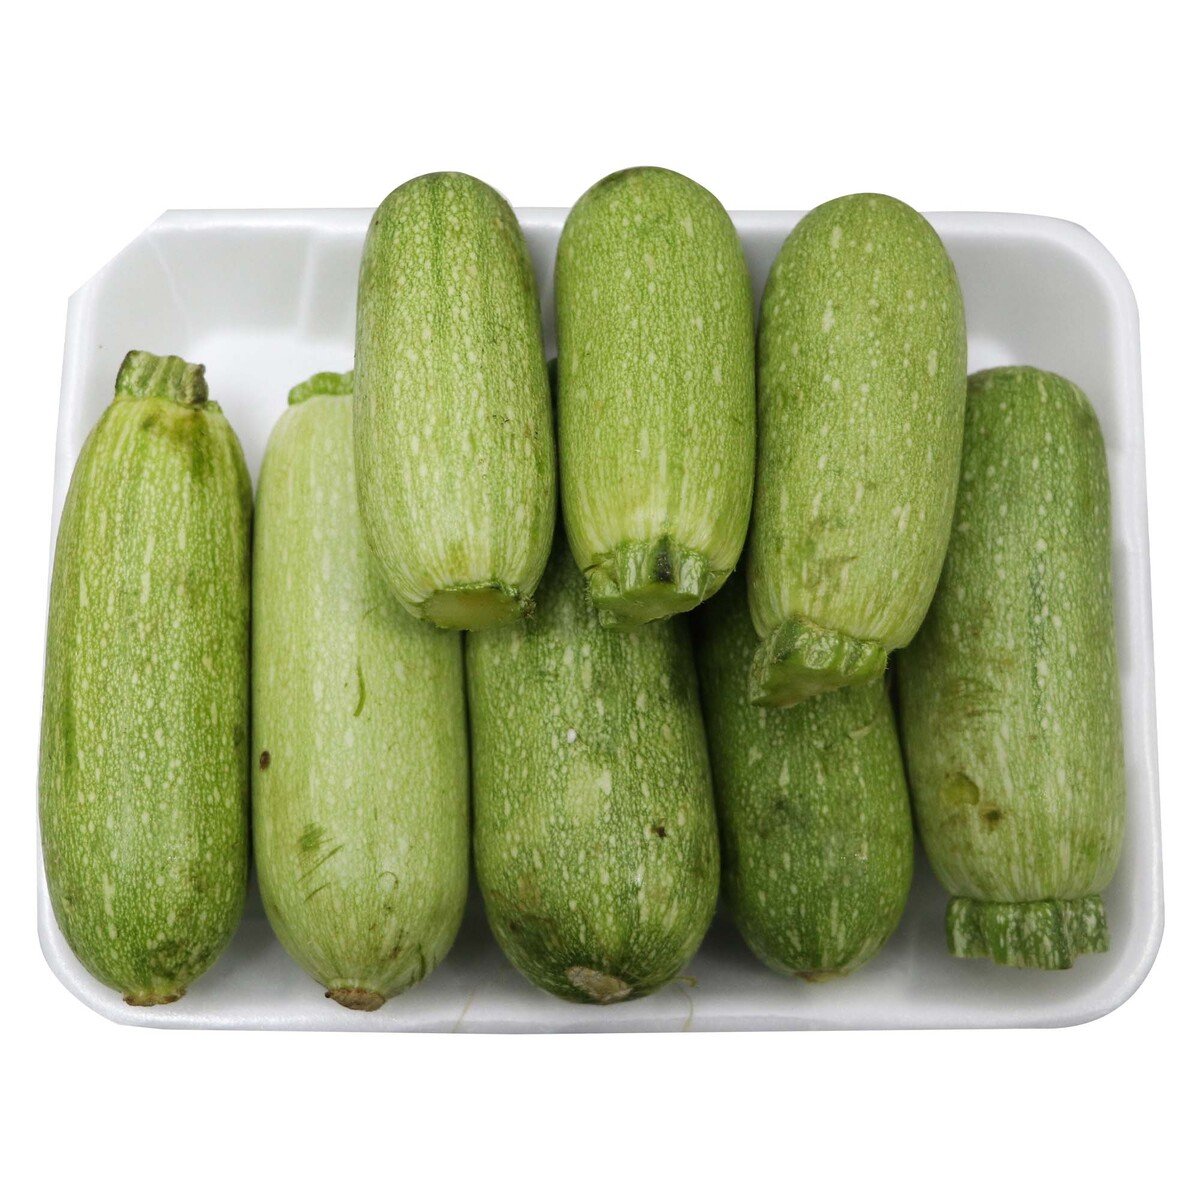 اشتري قم بشراء صينية كوسة مغلفة 500 جم تقريباً Online at Best Price من الموقع - من لولو هايبر ماركت Pre Packed Vegetable في السعودية